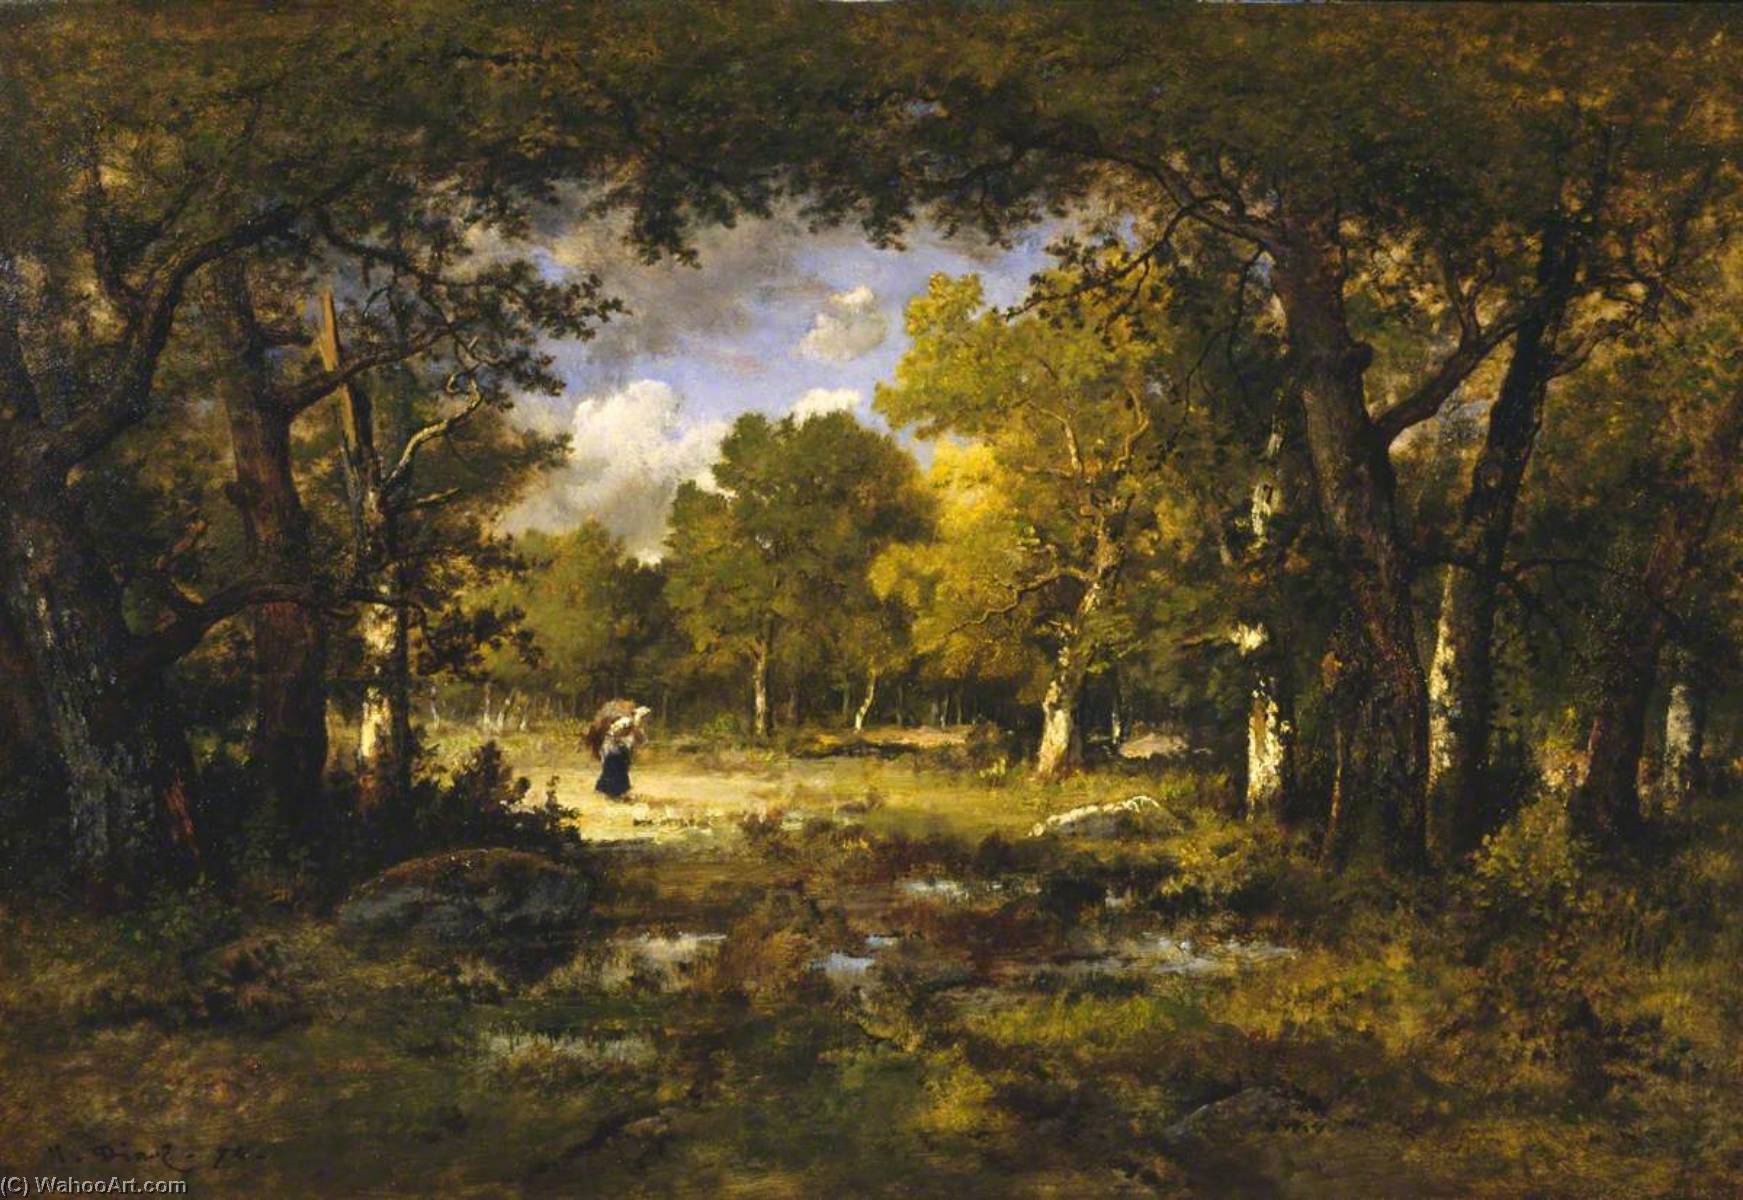 WikiOO.org - Encyclopedia of Fine Arts - Maľba, Artwork Narcisso Díaz De La Peña - Clearing in a Forest